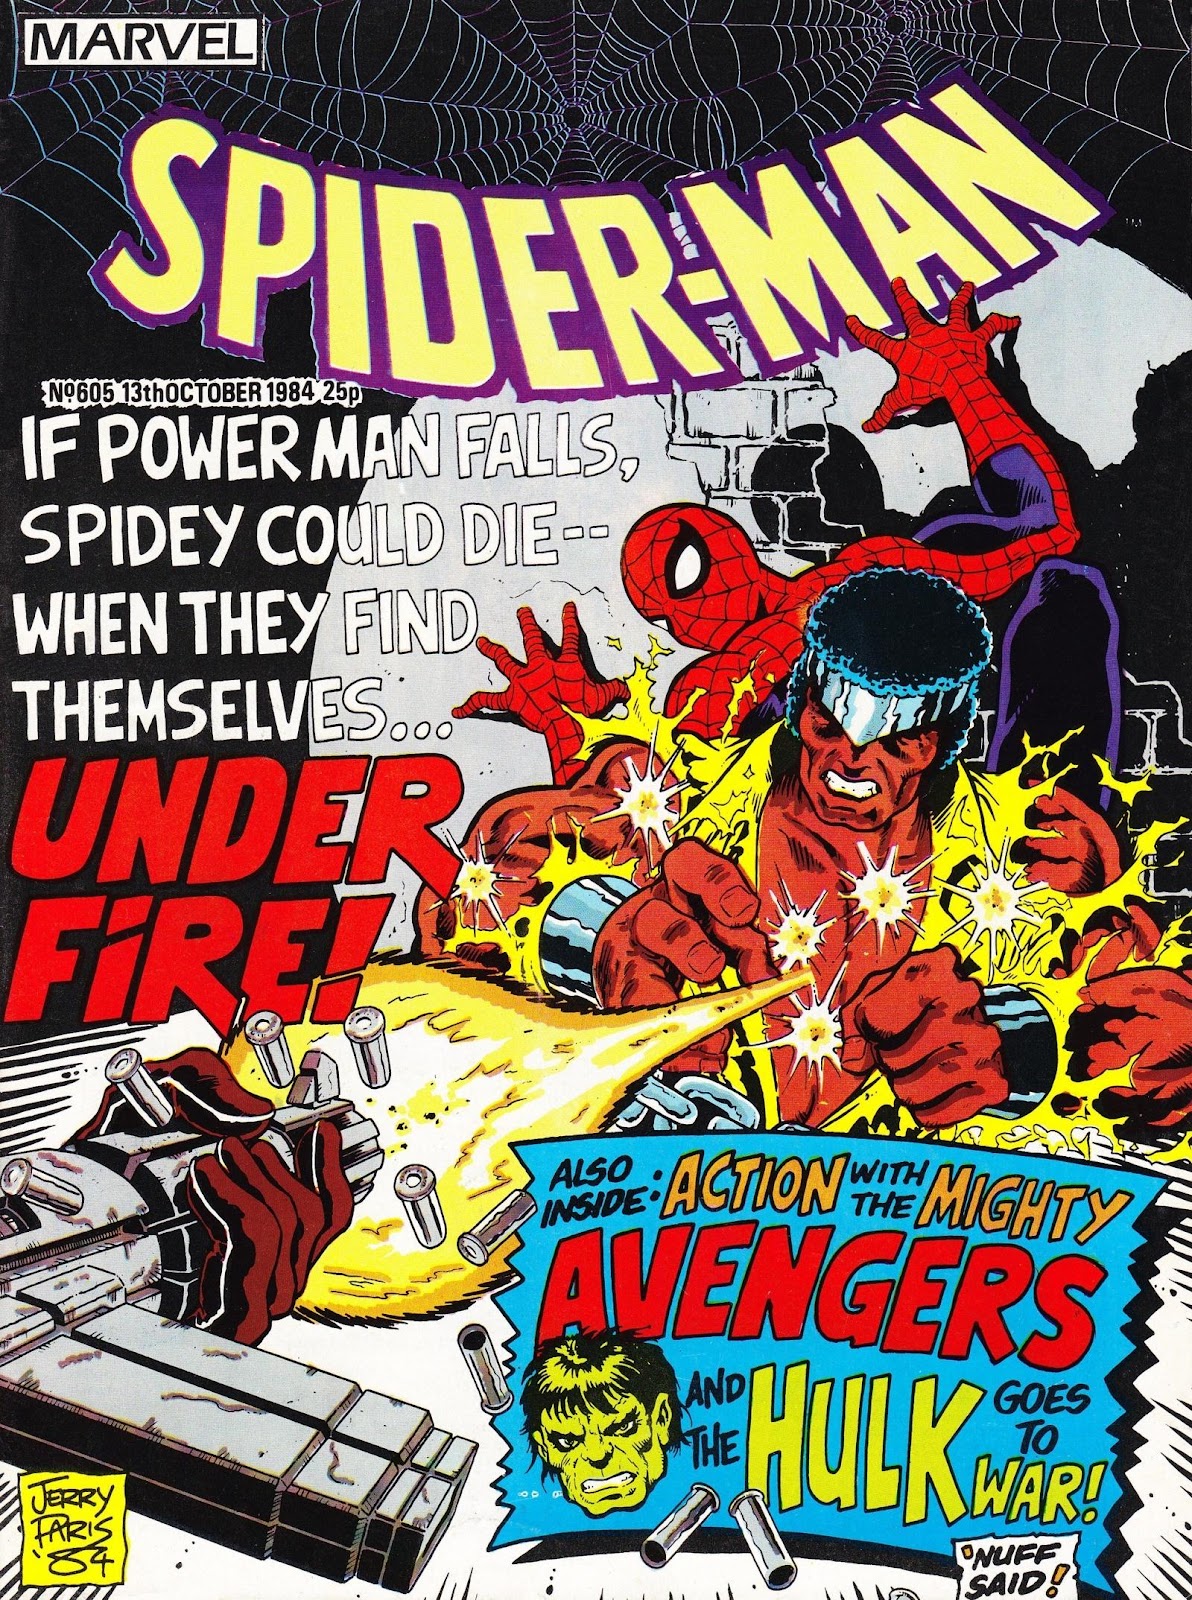 Spider-Man (1984) 605 Page 1